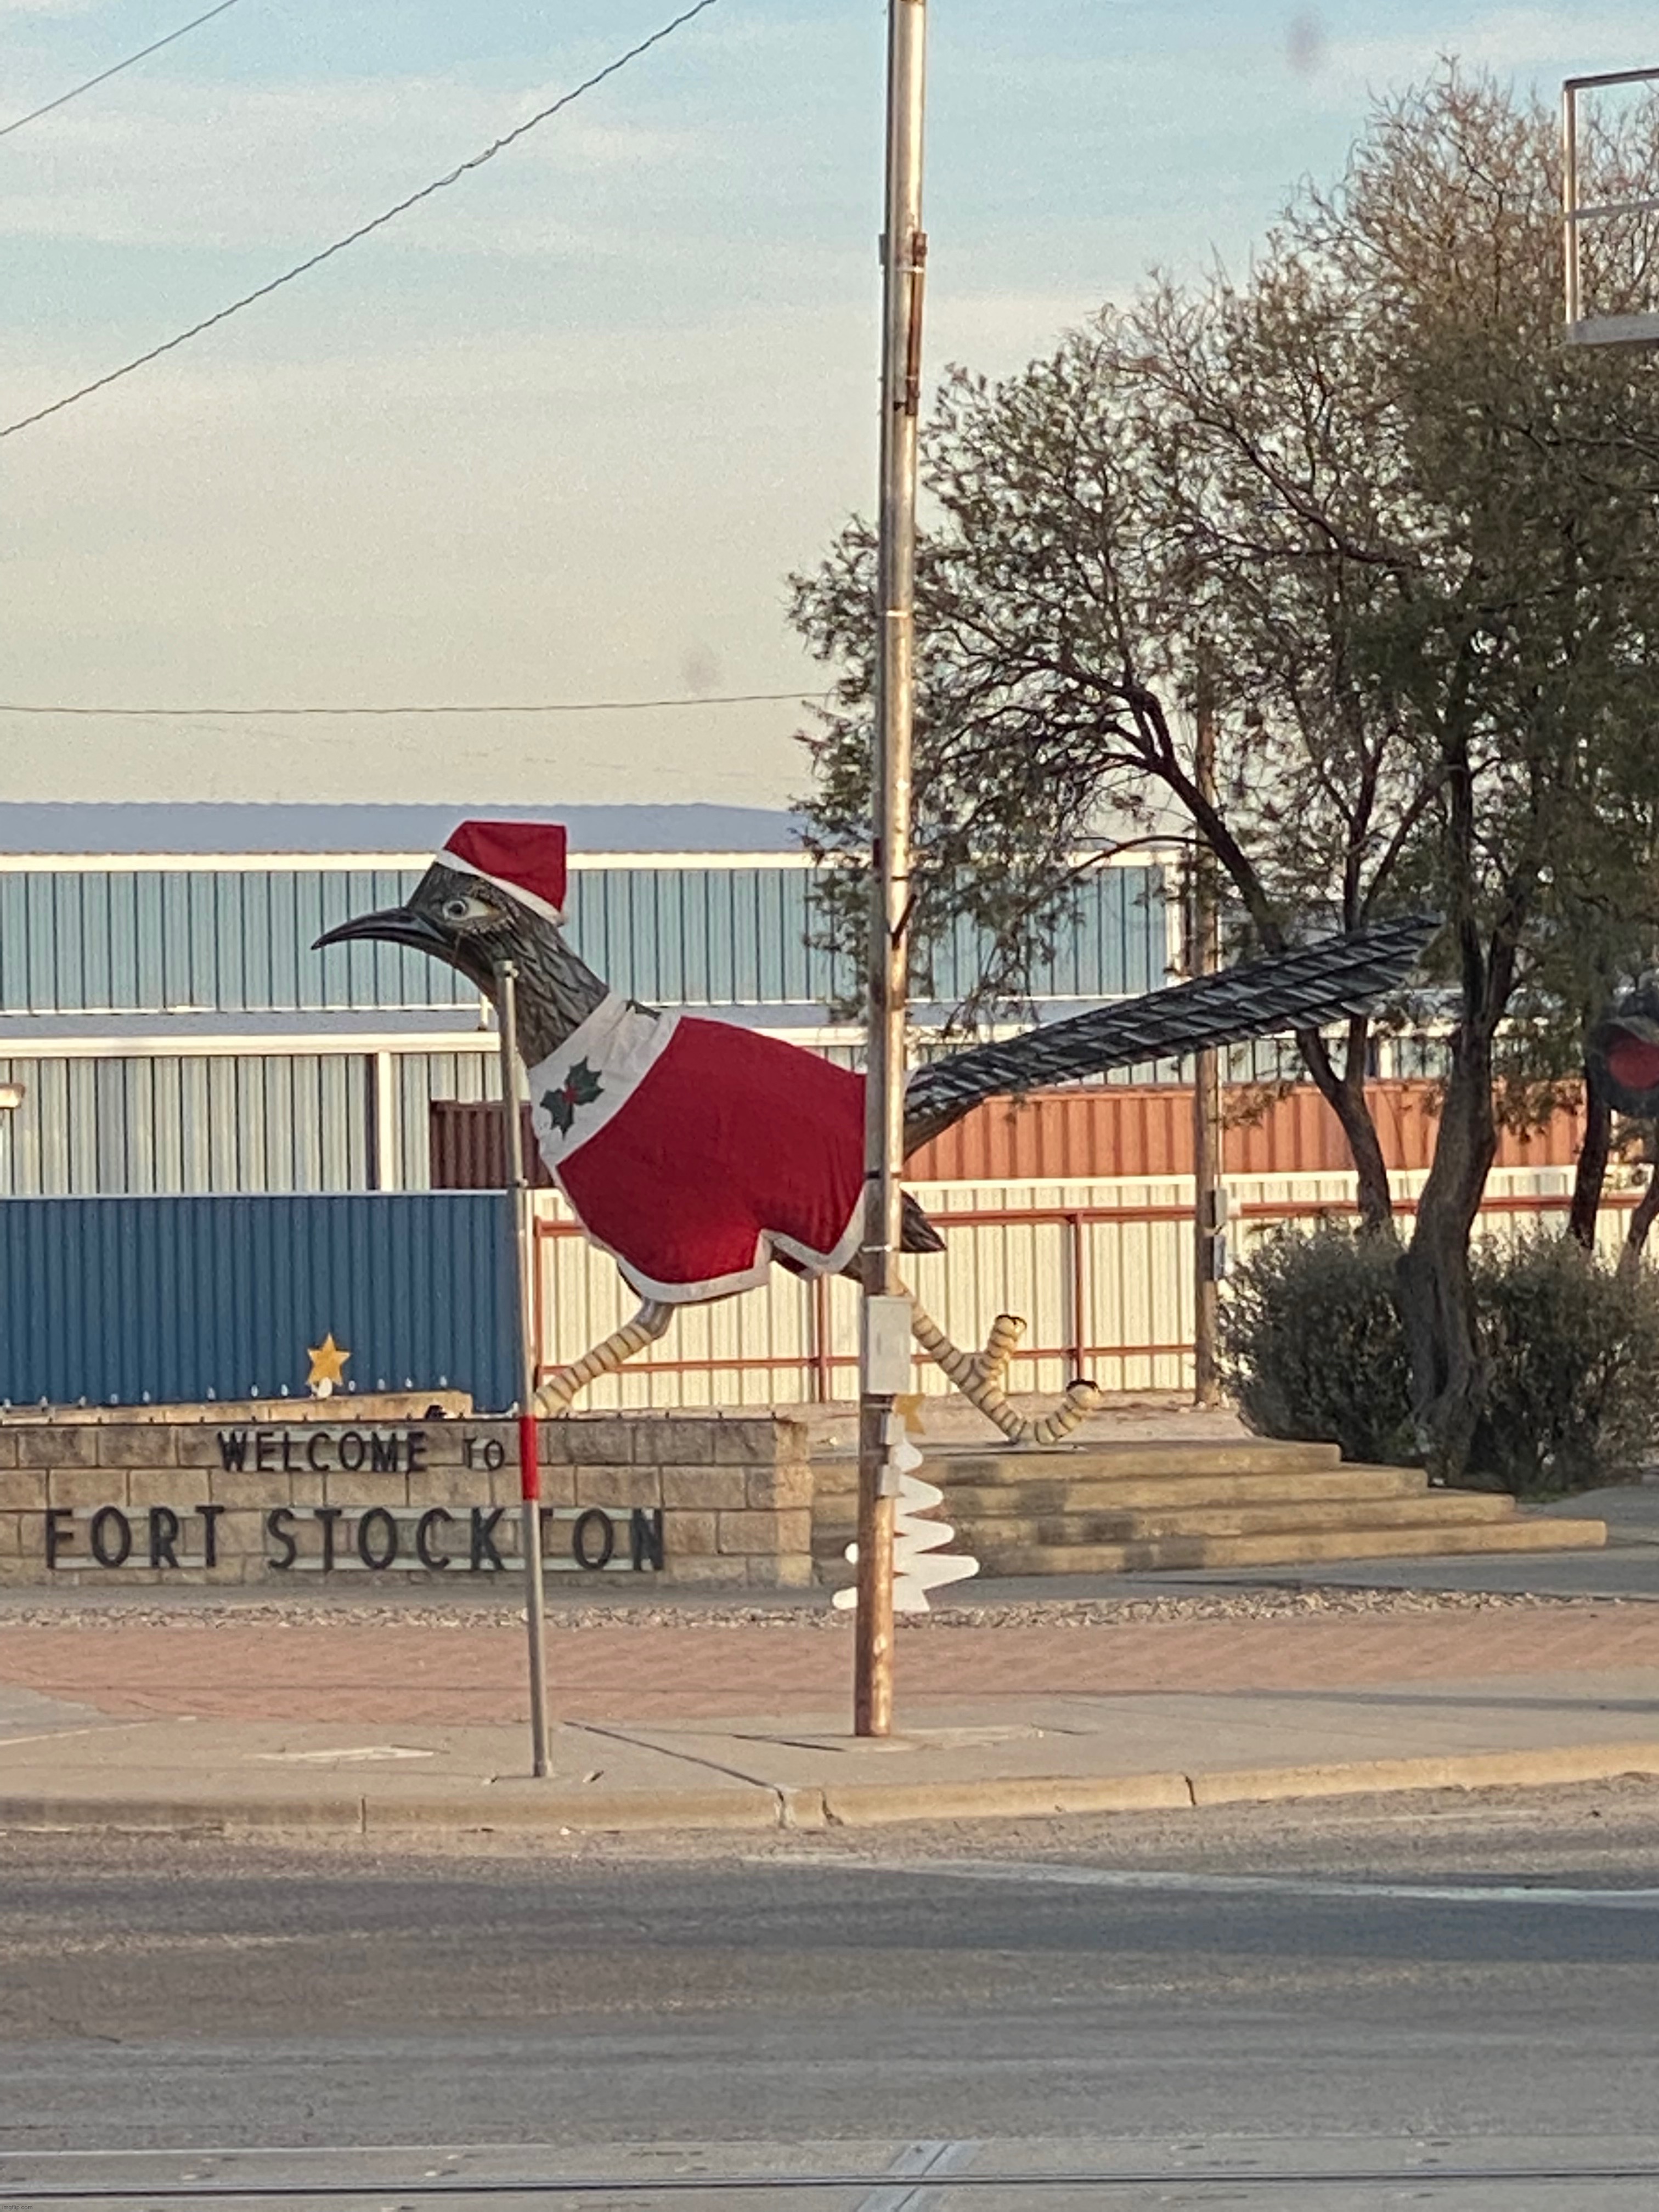 Roadrunner statue, Fort Stockton TX 12/20/22 | made w/ Imgflip meme maker